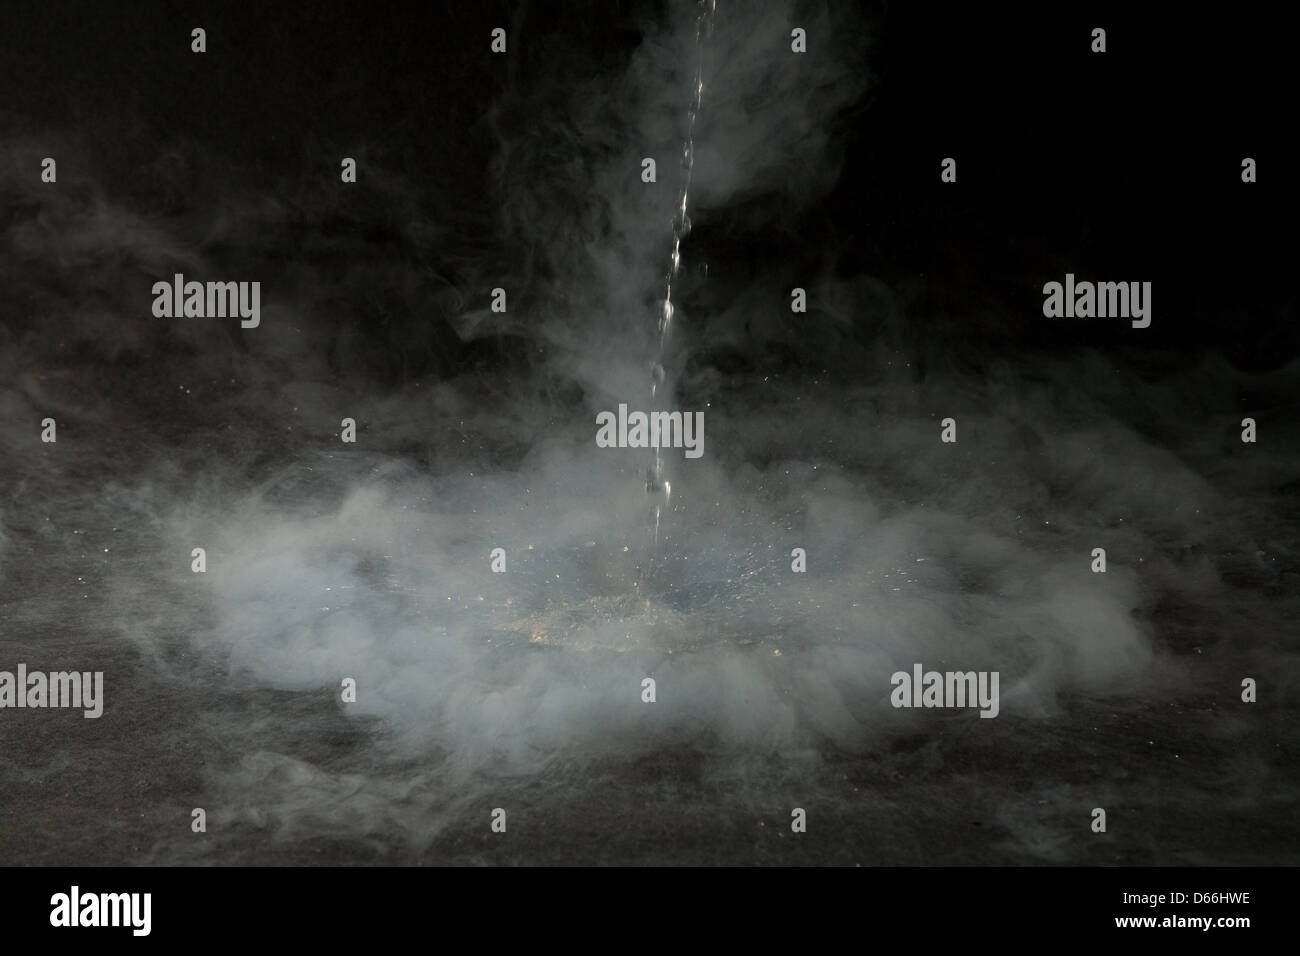 Ein Strom von flüssigem Stickstoff bei - 200degC in einem Uhrglas verursachen Wolken von nebligen Dampf zu bilden, wie es verdampft. Stockfoto